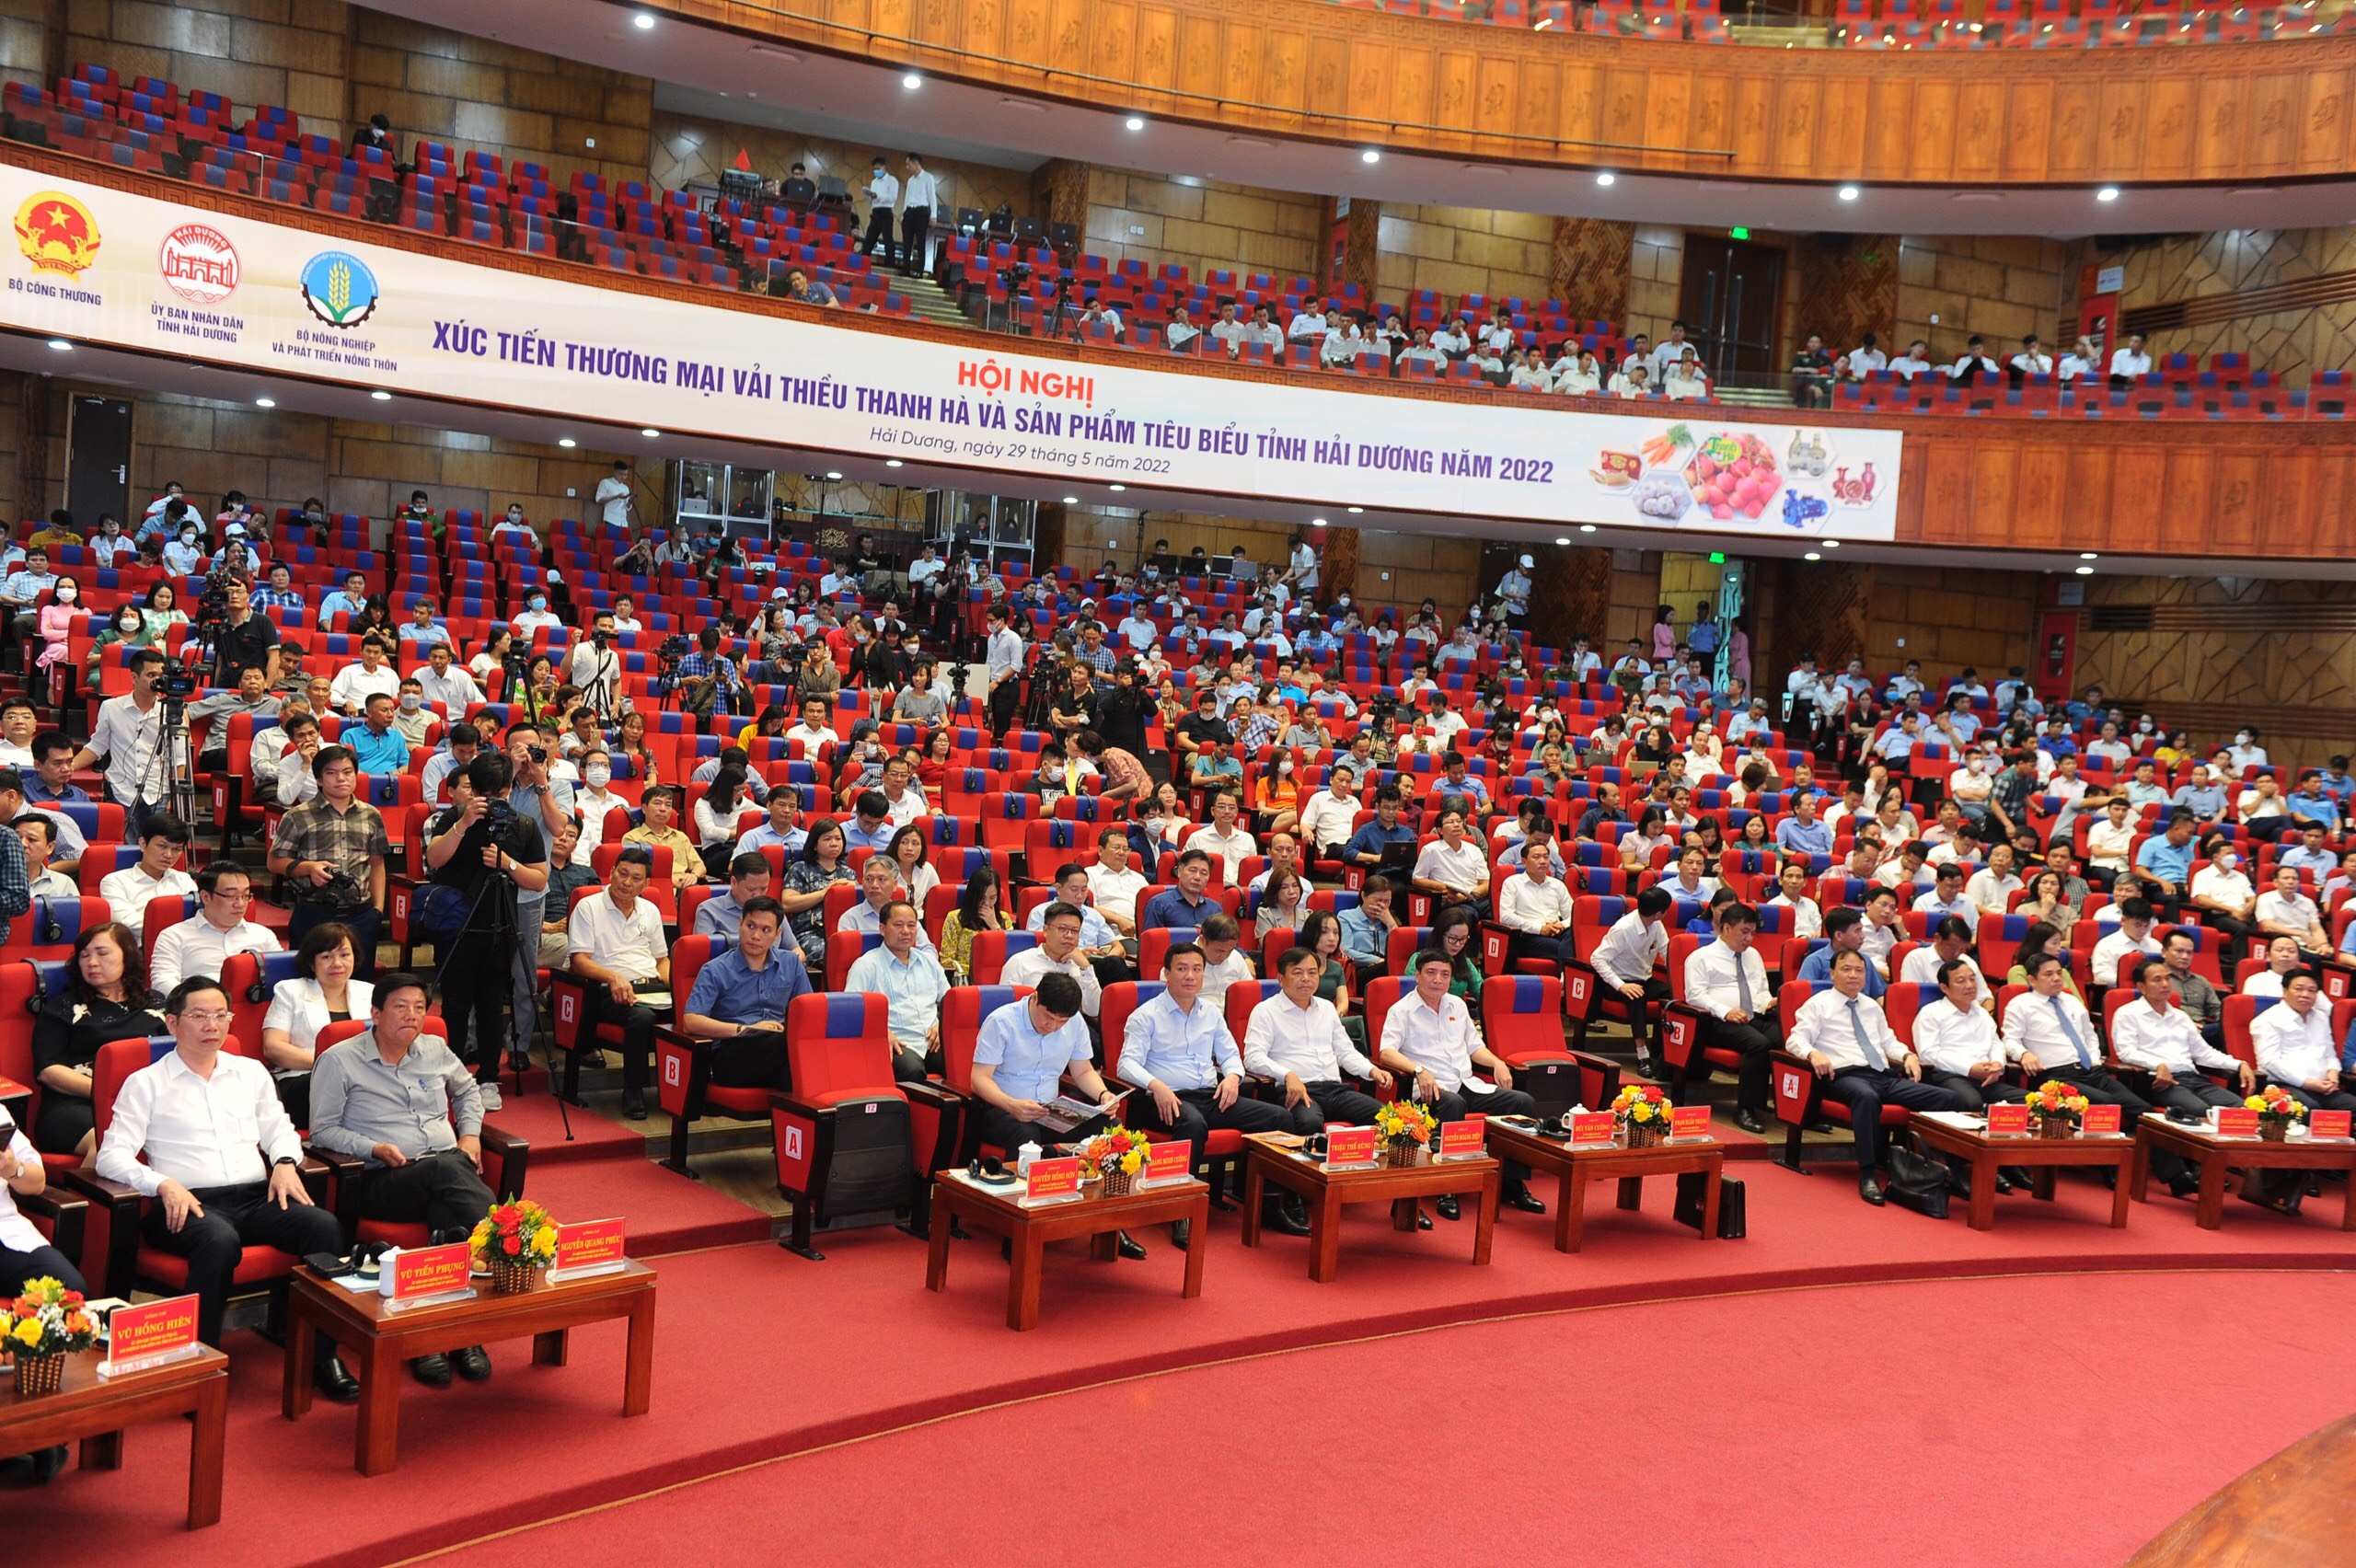 Các đại biểu dự Hội nghị xúc tiến thương mại vải thiều Thanh Hà và sản phẩm tiêu biểu tỉnh Hải Dương năm 2022.